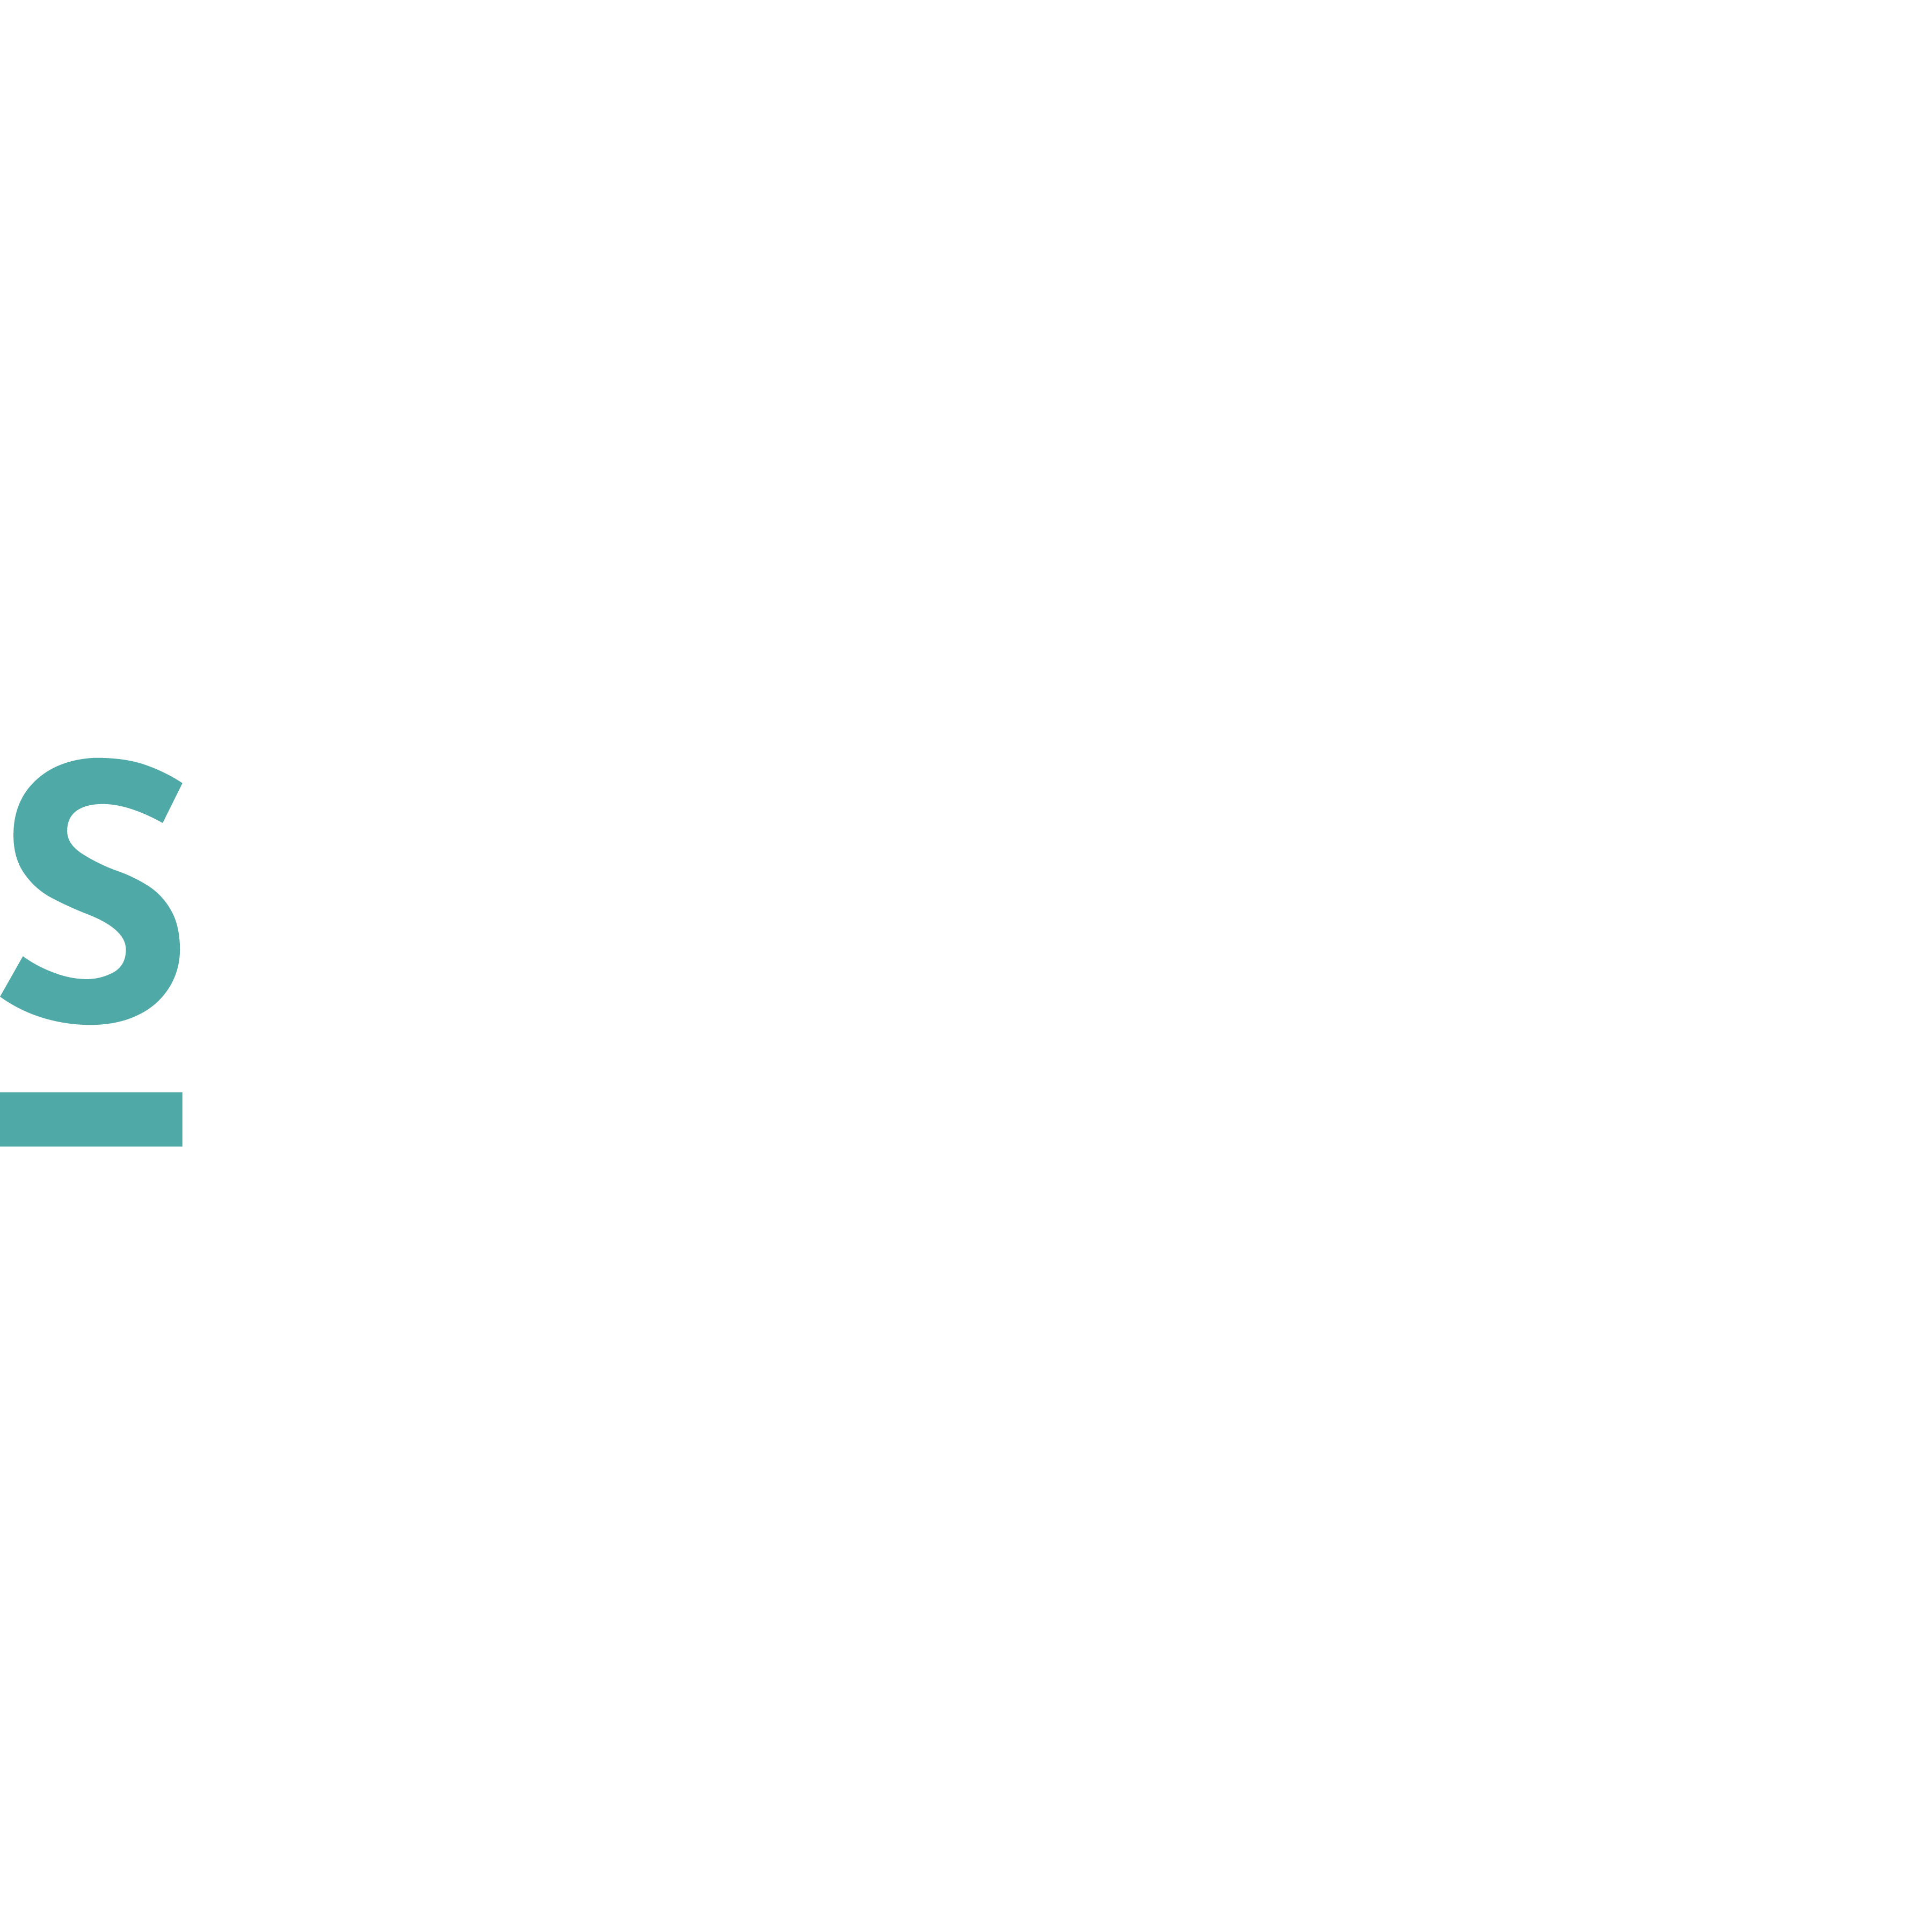 Saporare - Italian Food Boutique